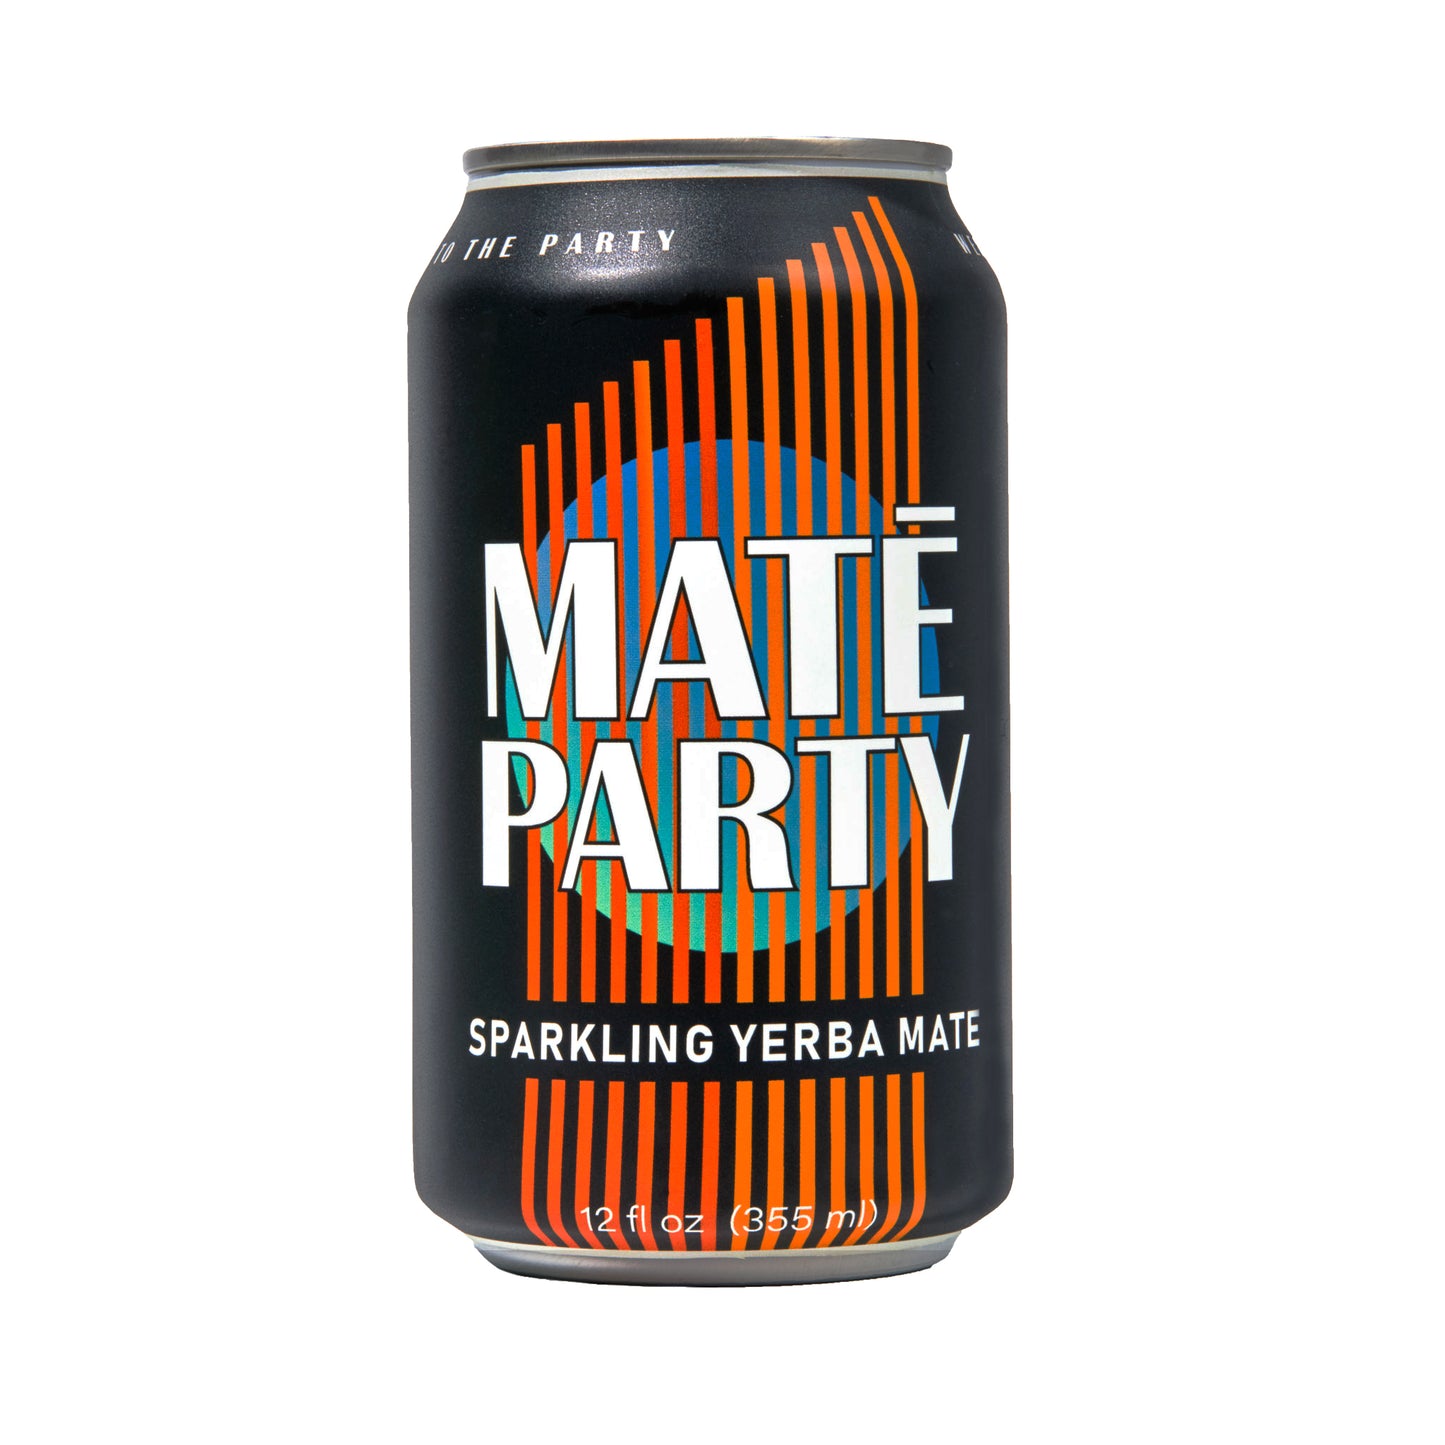 Maté Party - Original